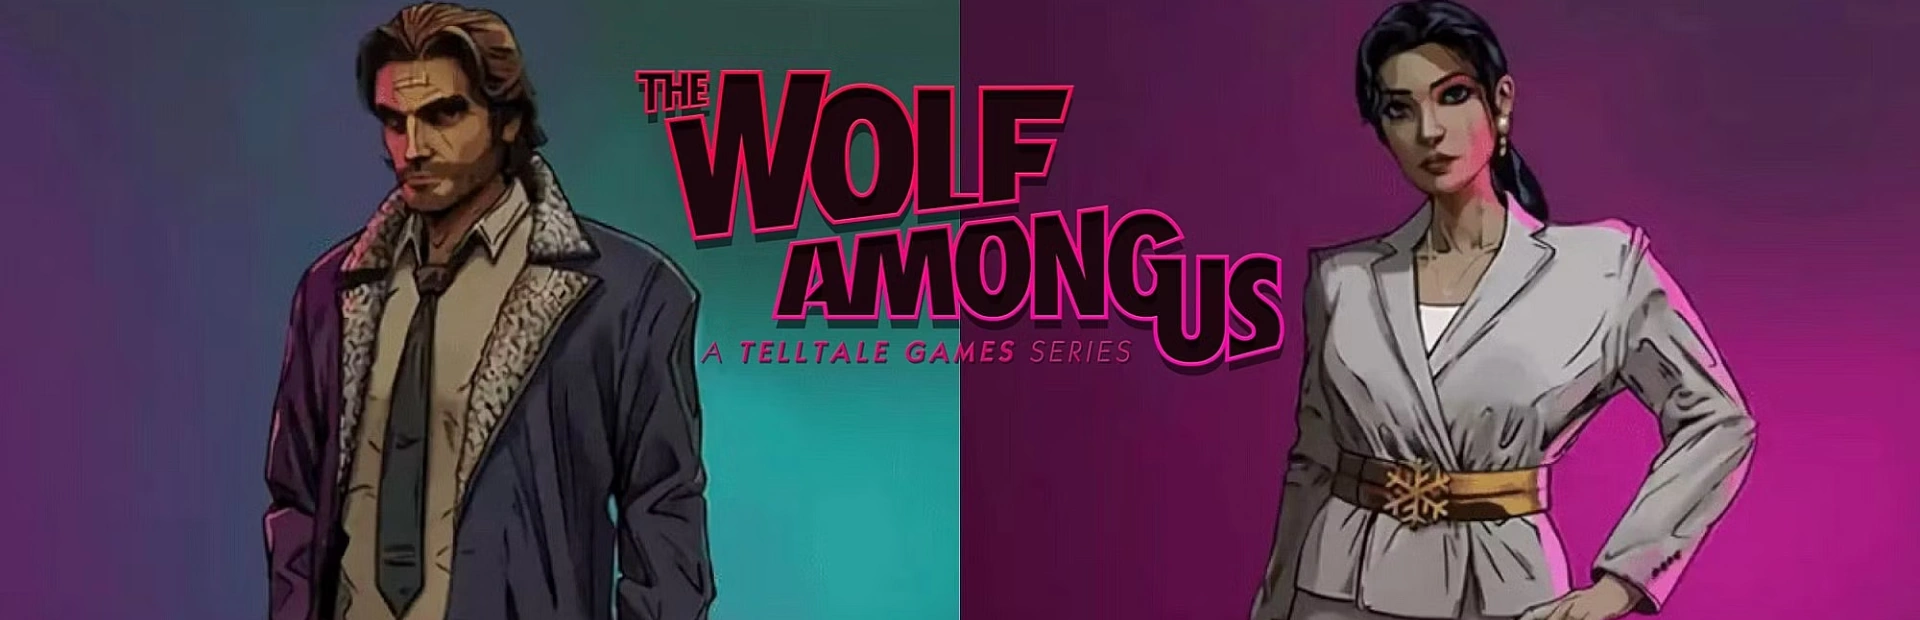 دانلود بازی The Wolf Among Us برای کامپیوتر | گیمباتو 